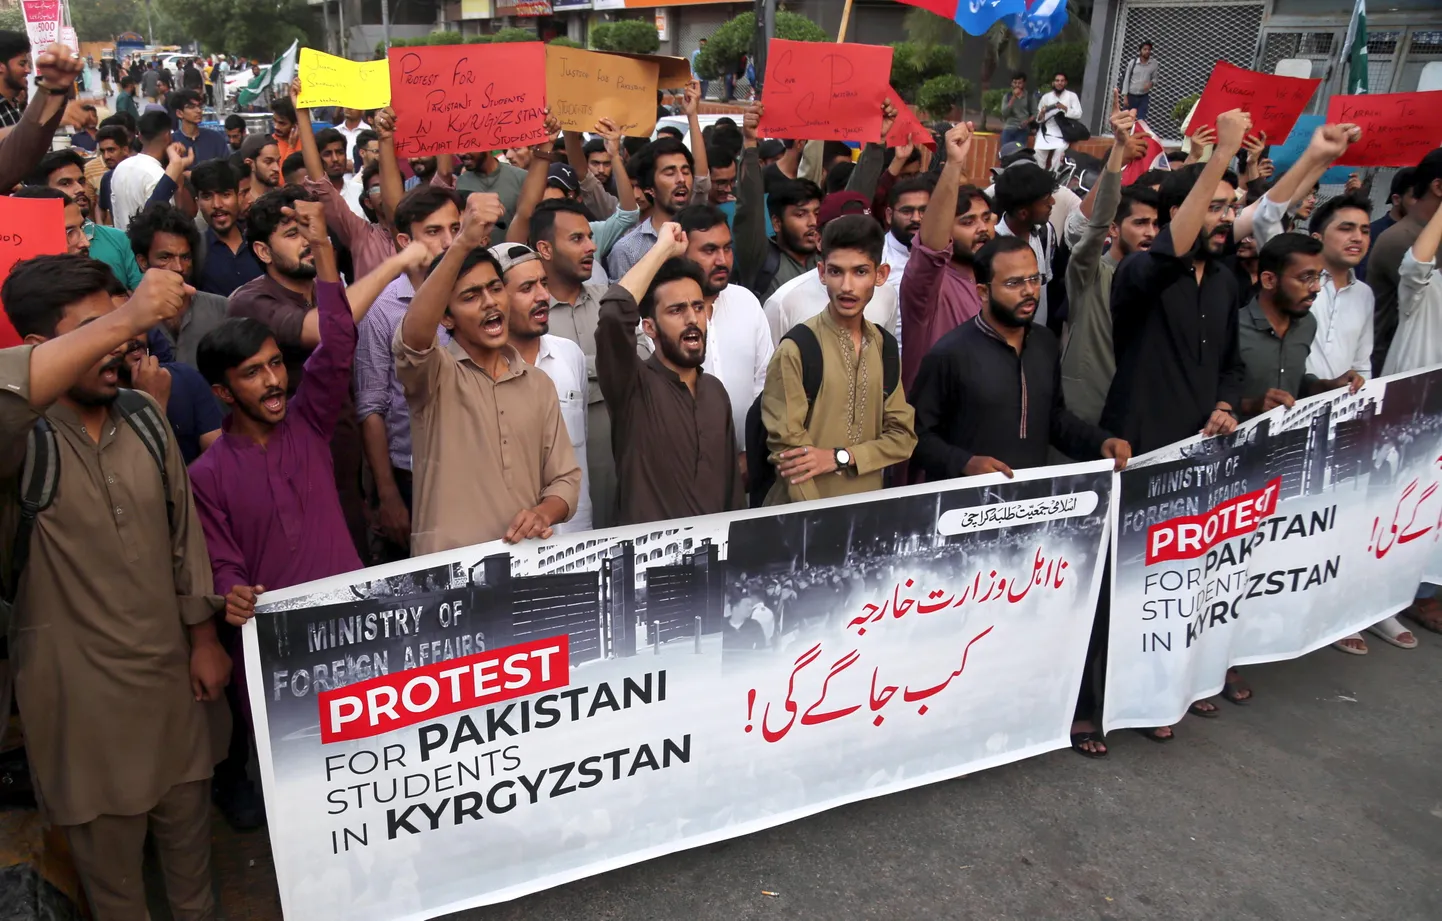 Pakistani meeleavaldajad nõuavad vägivalla lõpetamist pakistani tudengite vastu Kõrgõzstanis.